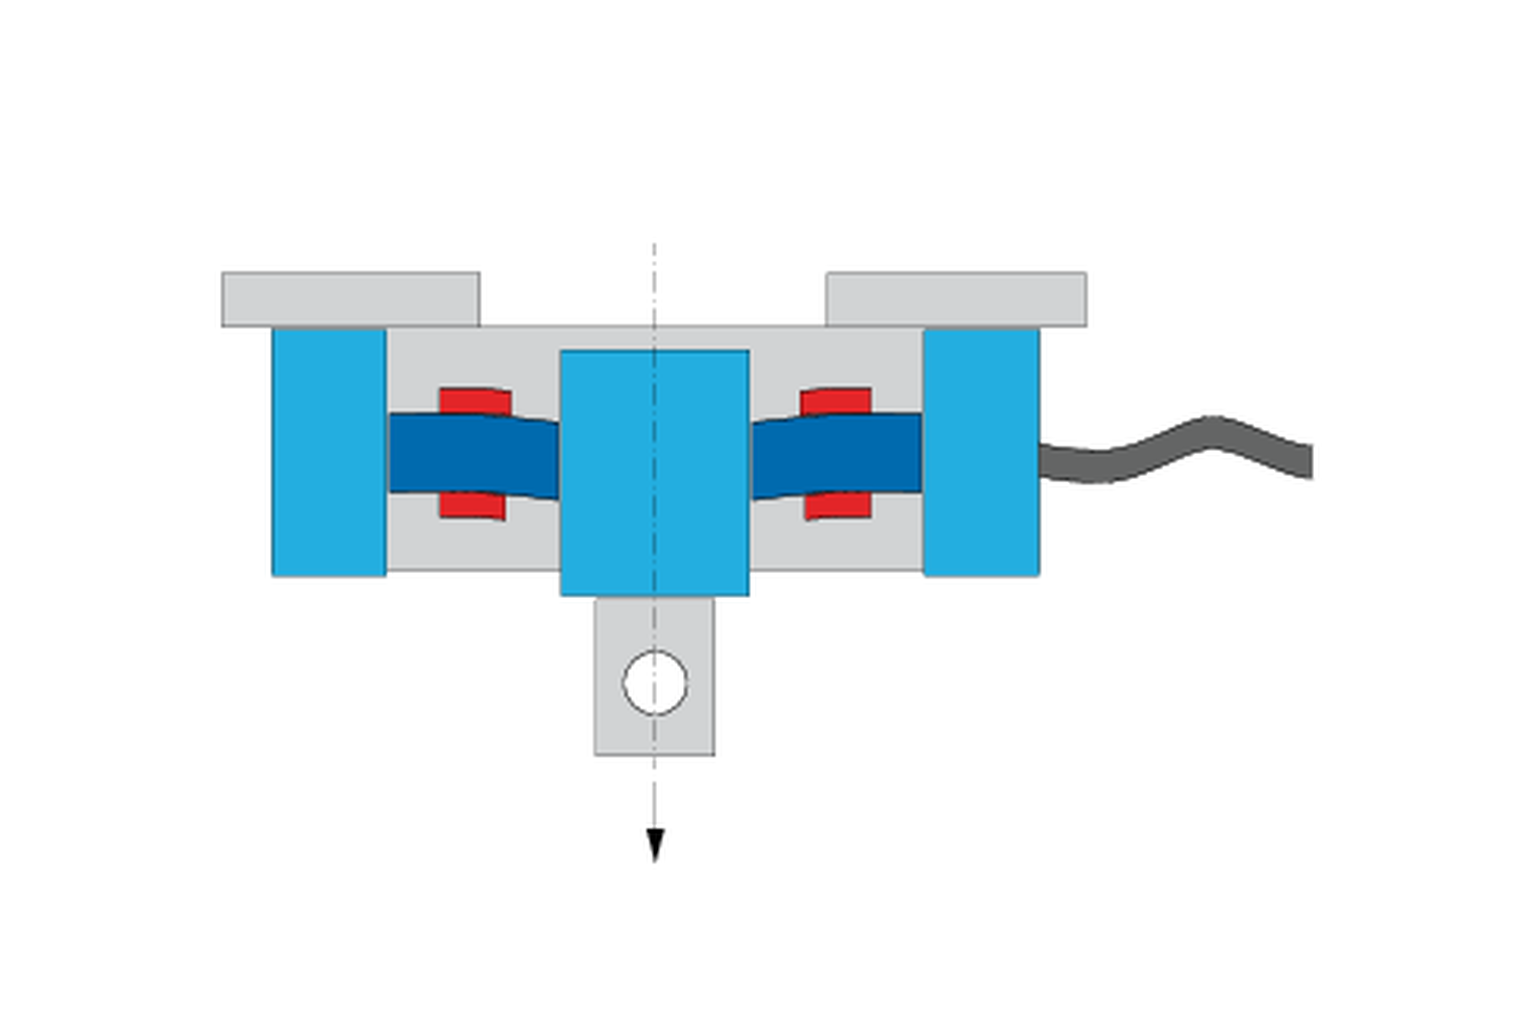 ¿Cómo funciona una célula de carga? Gráfico de una célula de carga con bandas extensométricas estiradas y comprimidas